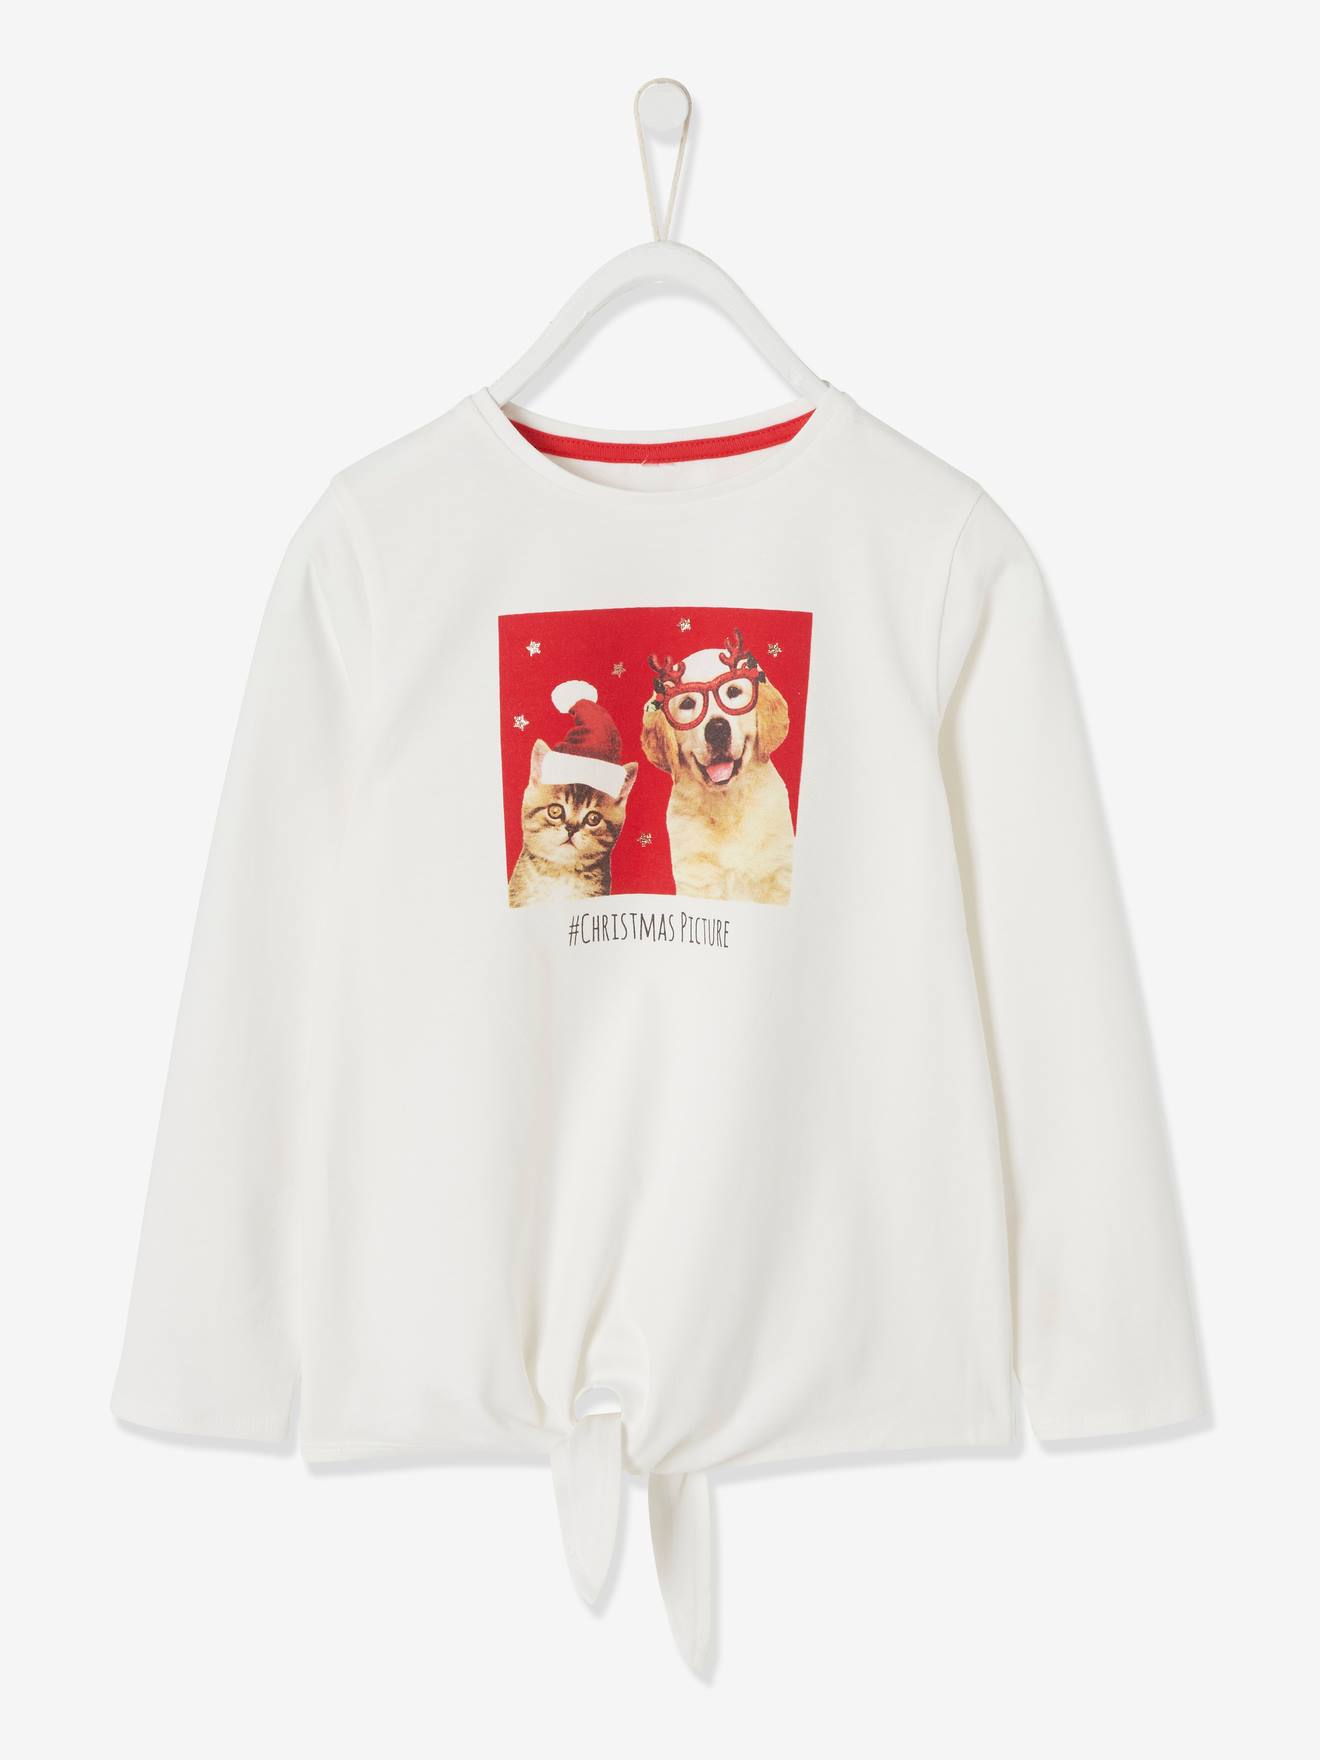 Femme Noël T-Shirt Fantaisie Imprimé Filles Rétro Vintage Top Lot Femme Noël 